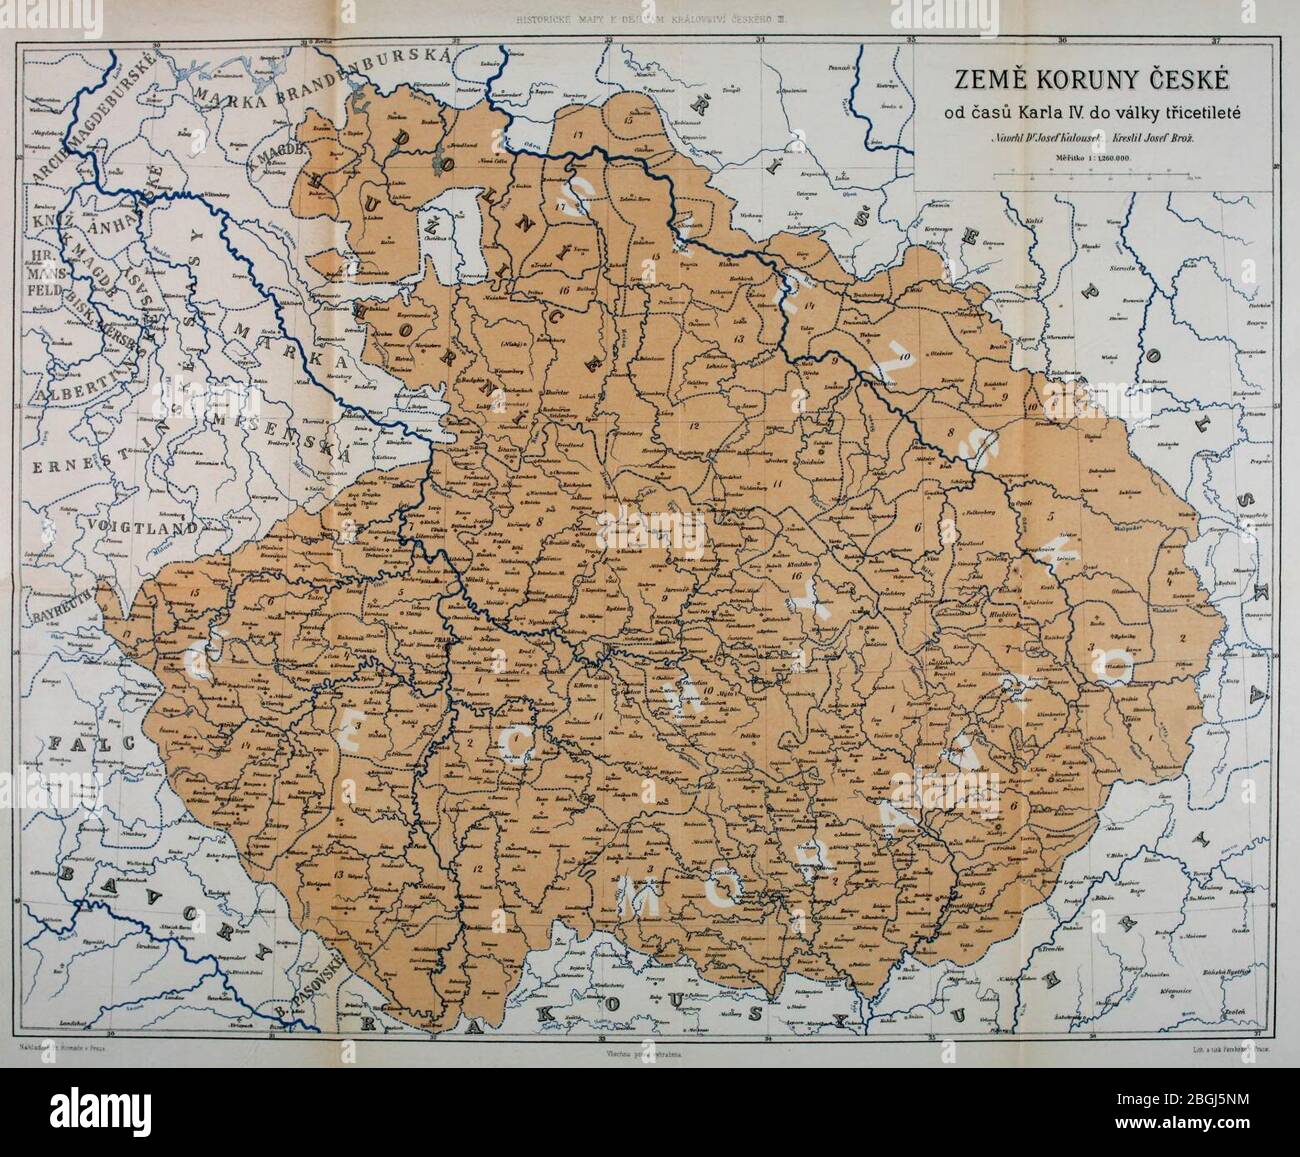 Historická mapa - Země koruny české od časů Karla IV do války třicetileté. Stock Photo